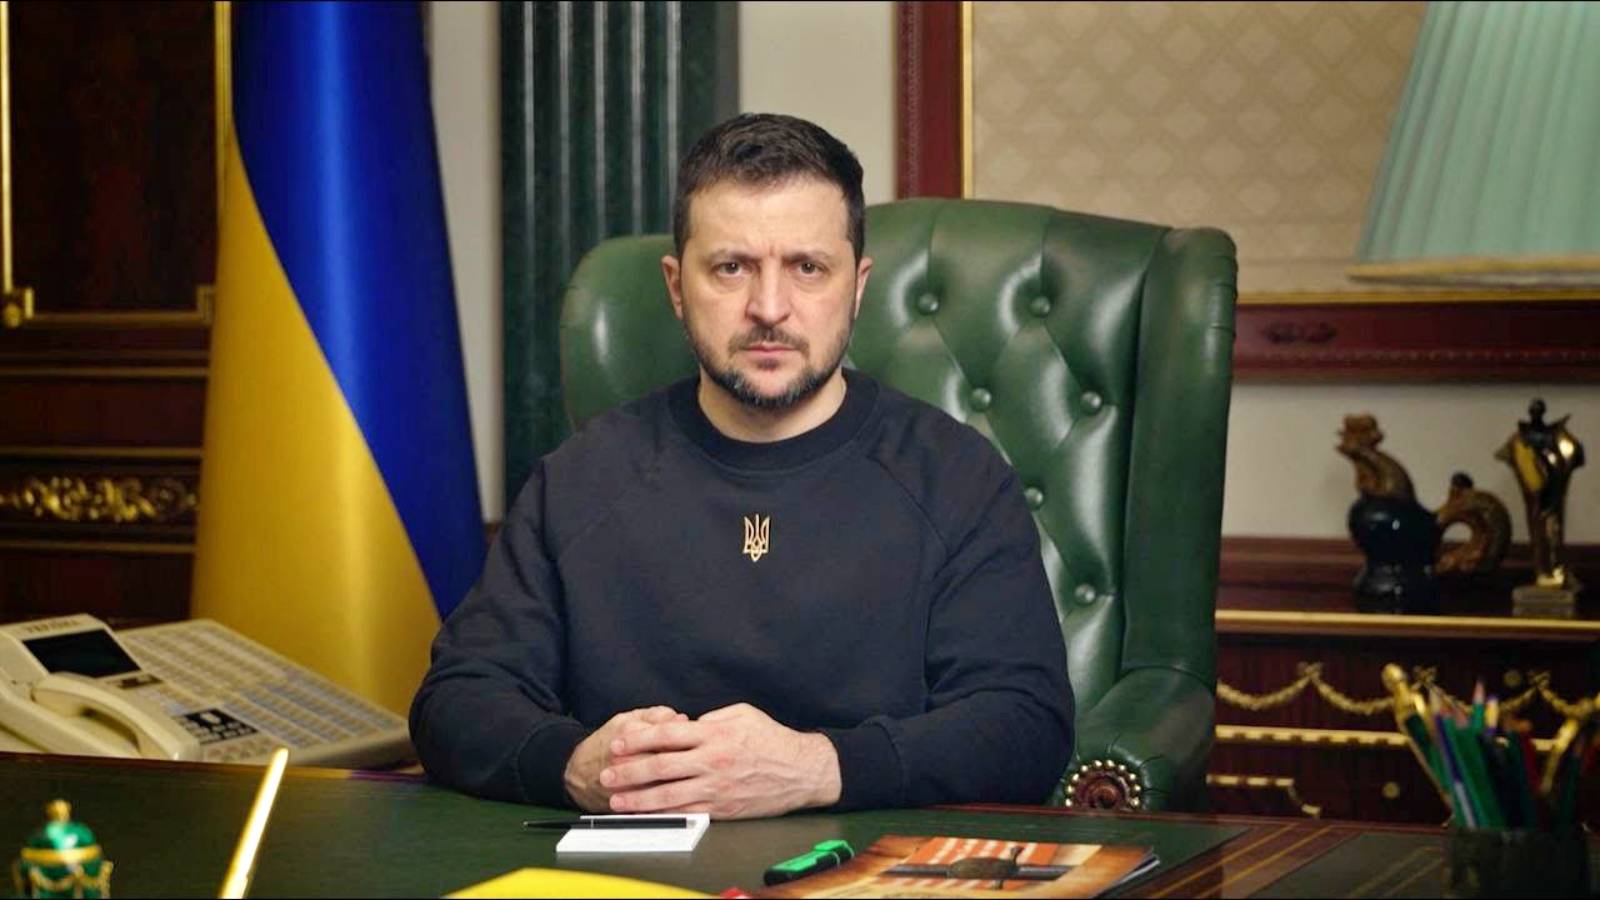 Le informazioni di Volodymyr Zelenskyj Le misure dell'Ucraina sono piene di guerra contro la Russia